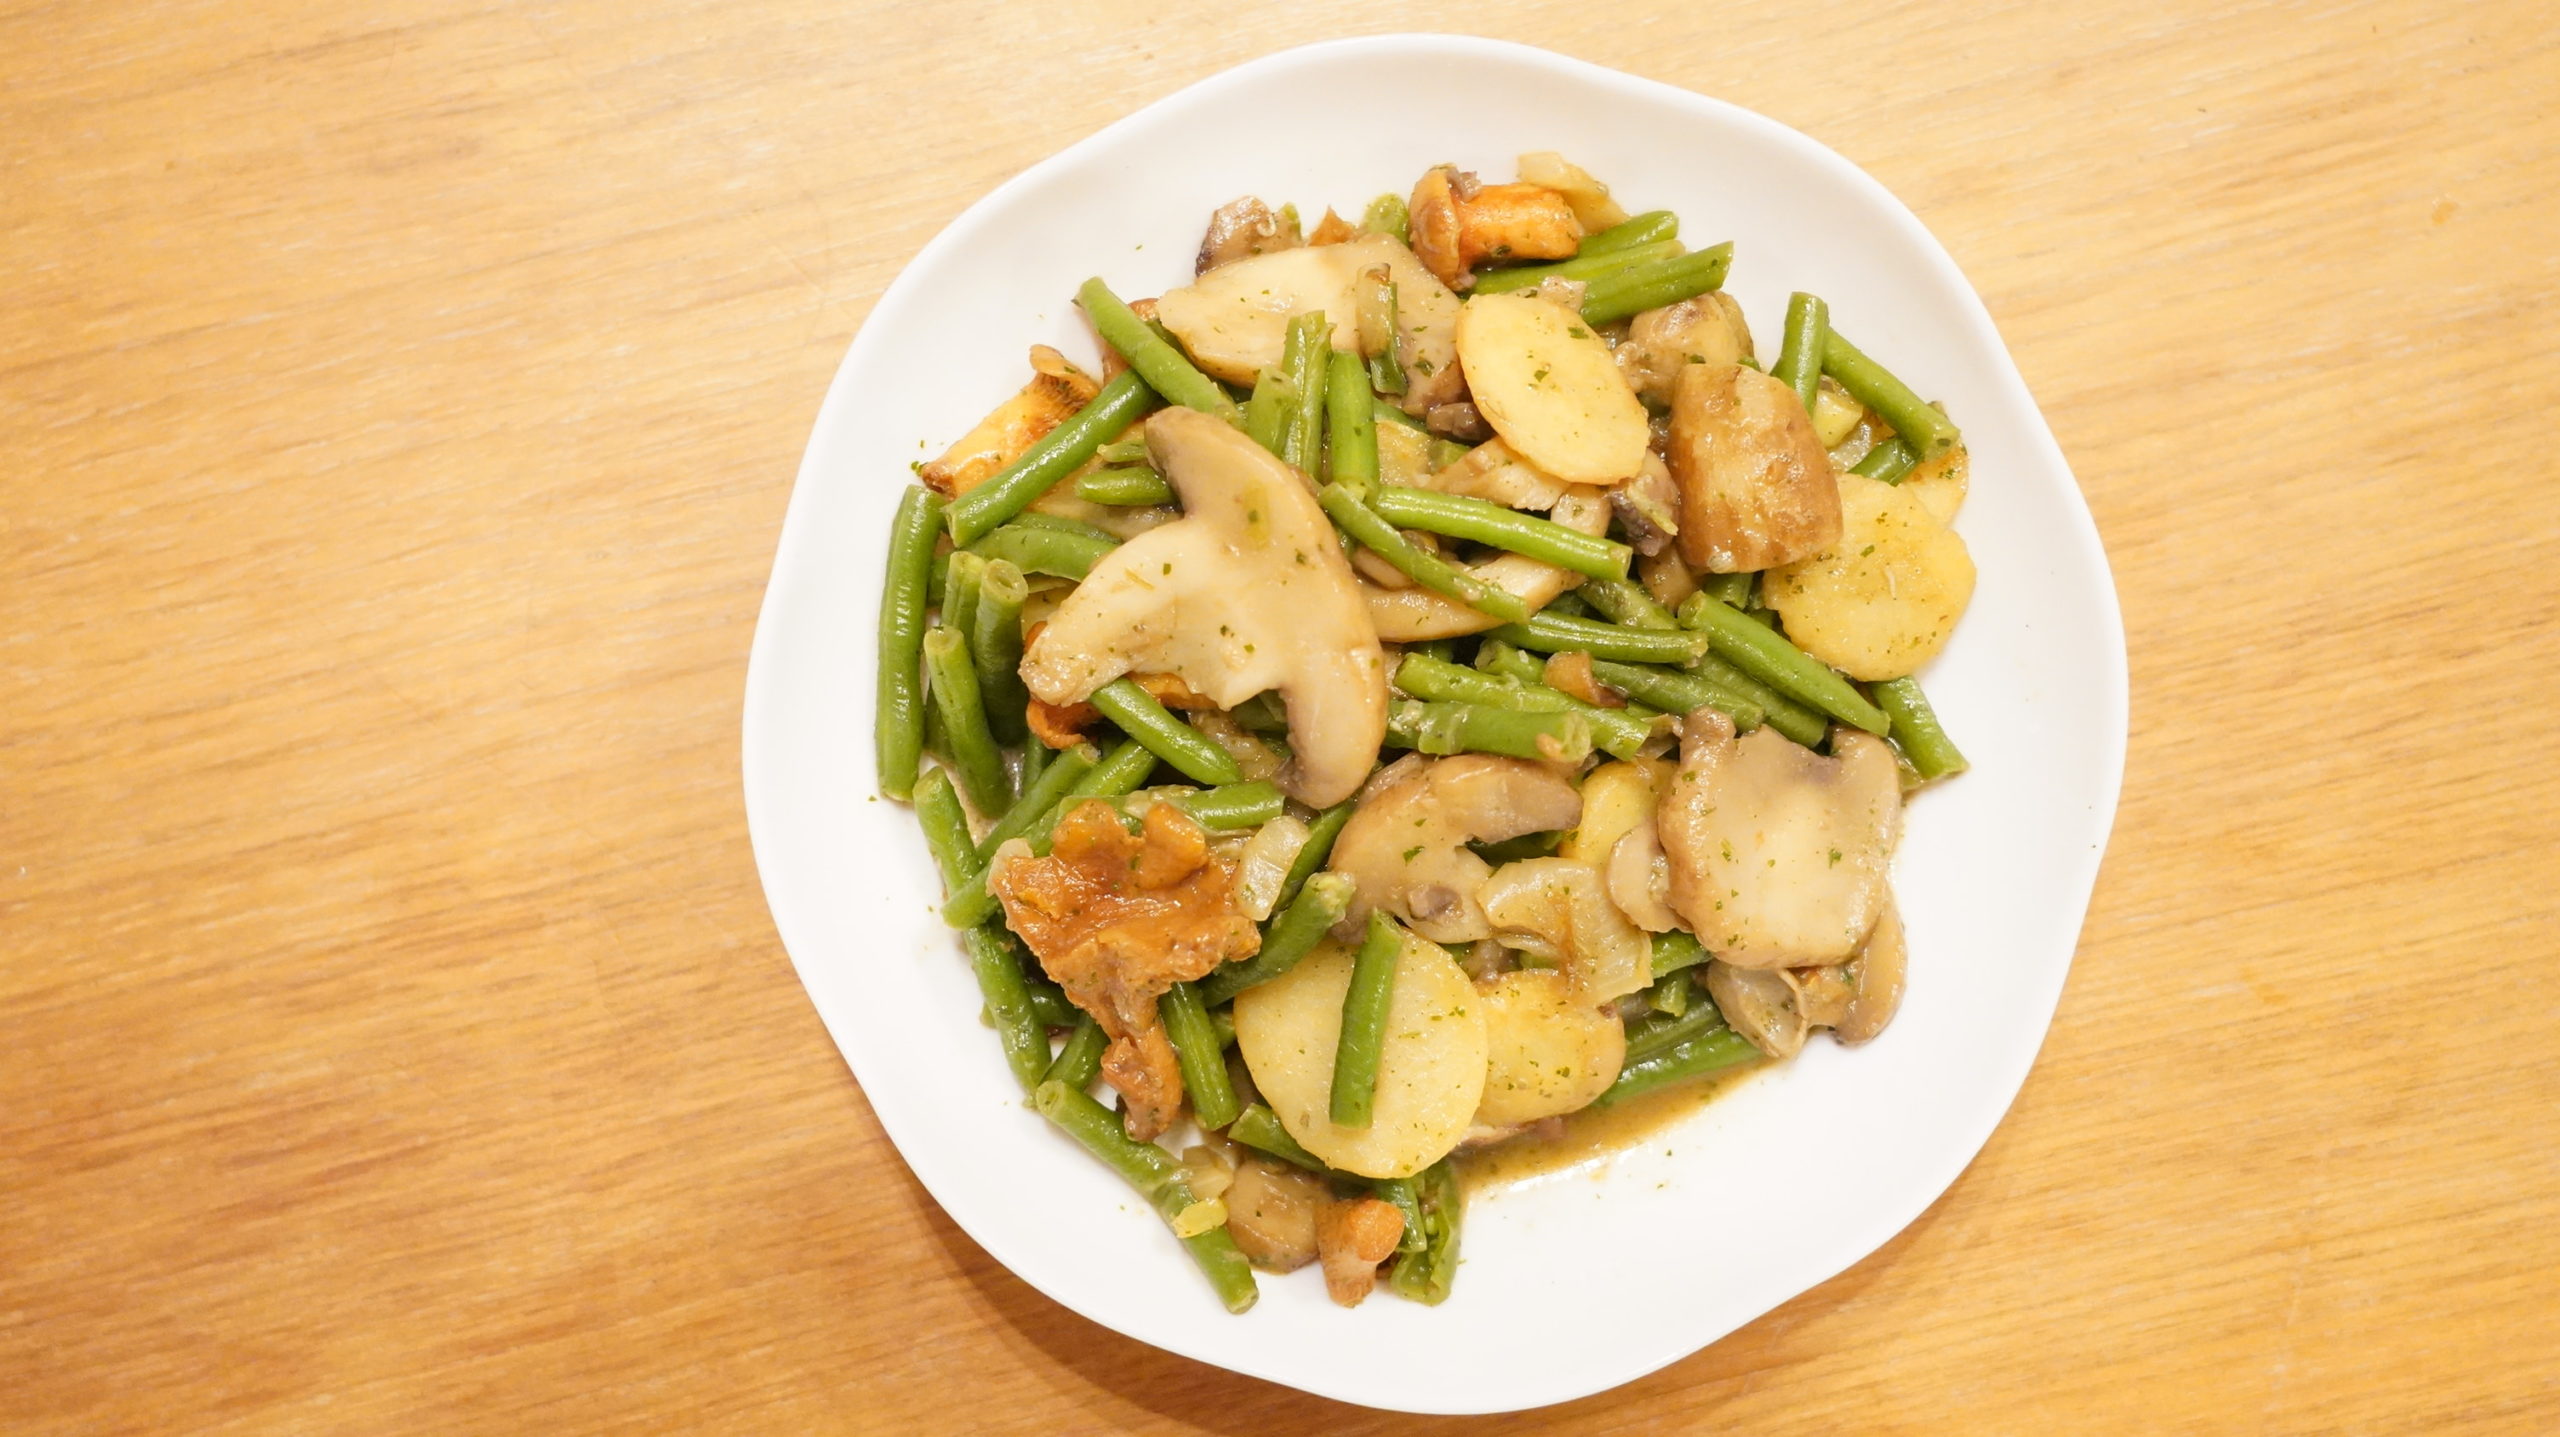 ピカールの冷凍食品「付合せ野菜ミックス（ジャガイモ、インゲン、キノコ）」を上から撮影した写真